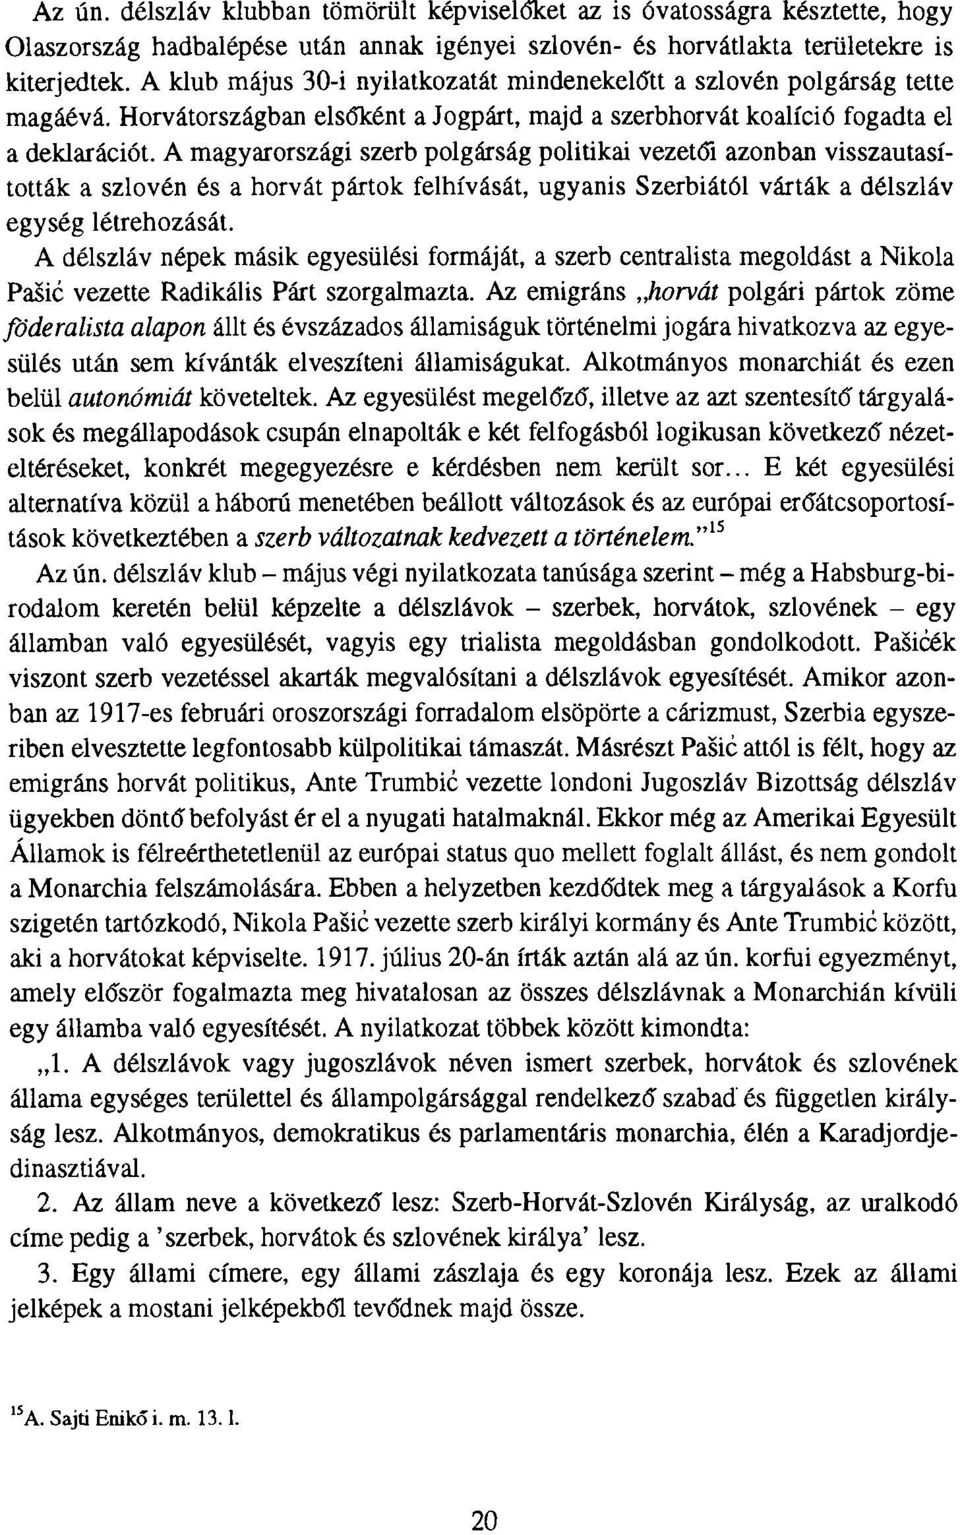 A magyarországi szerb polgárság politikai vezetői azonban visszautasították a szlovén és a horvát pártok felhívását, ugyanis Szerbiától várták a délszláv egység létrehozását.